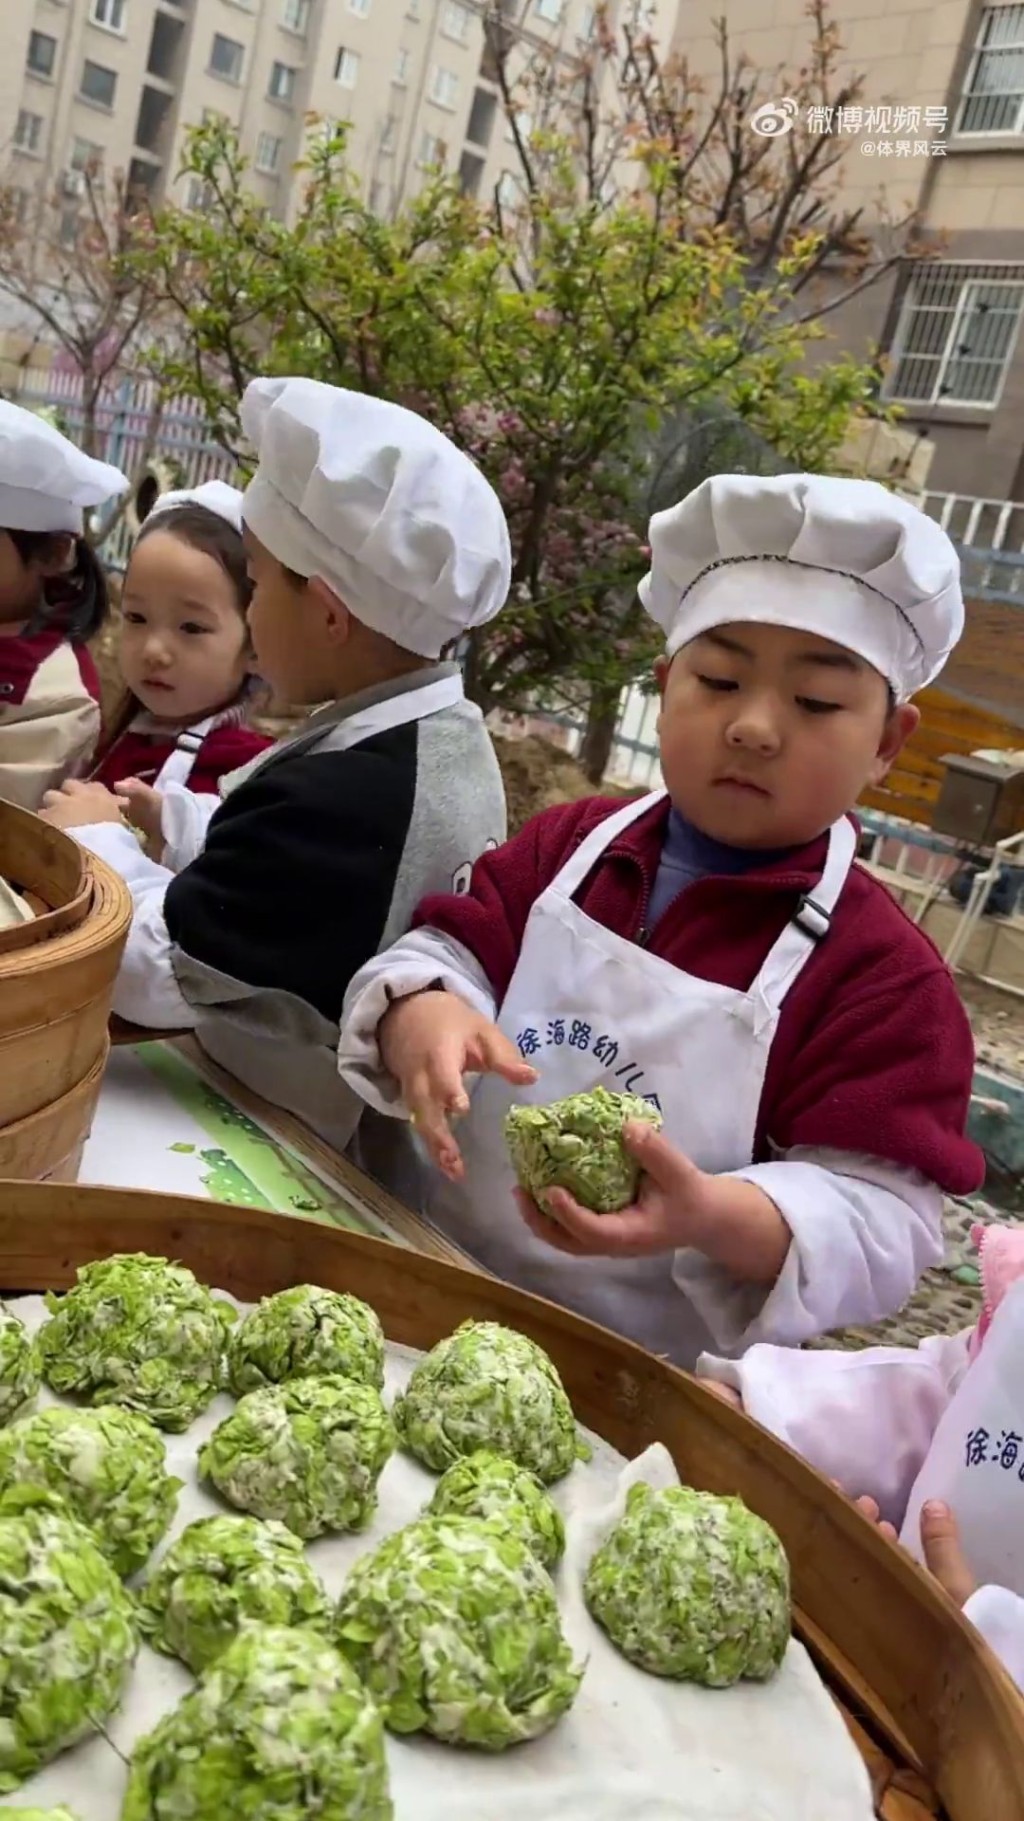 一年四季，徐海路幼兒園都有不同的生活課程。